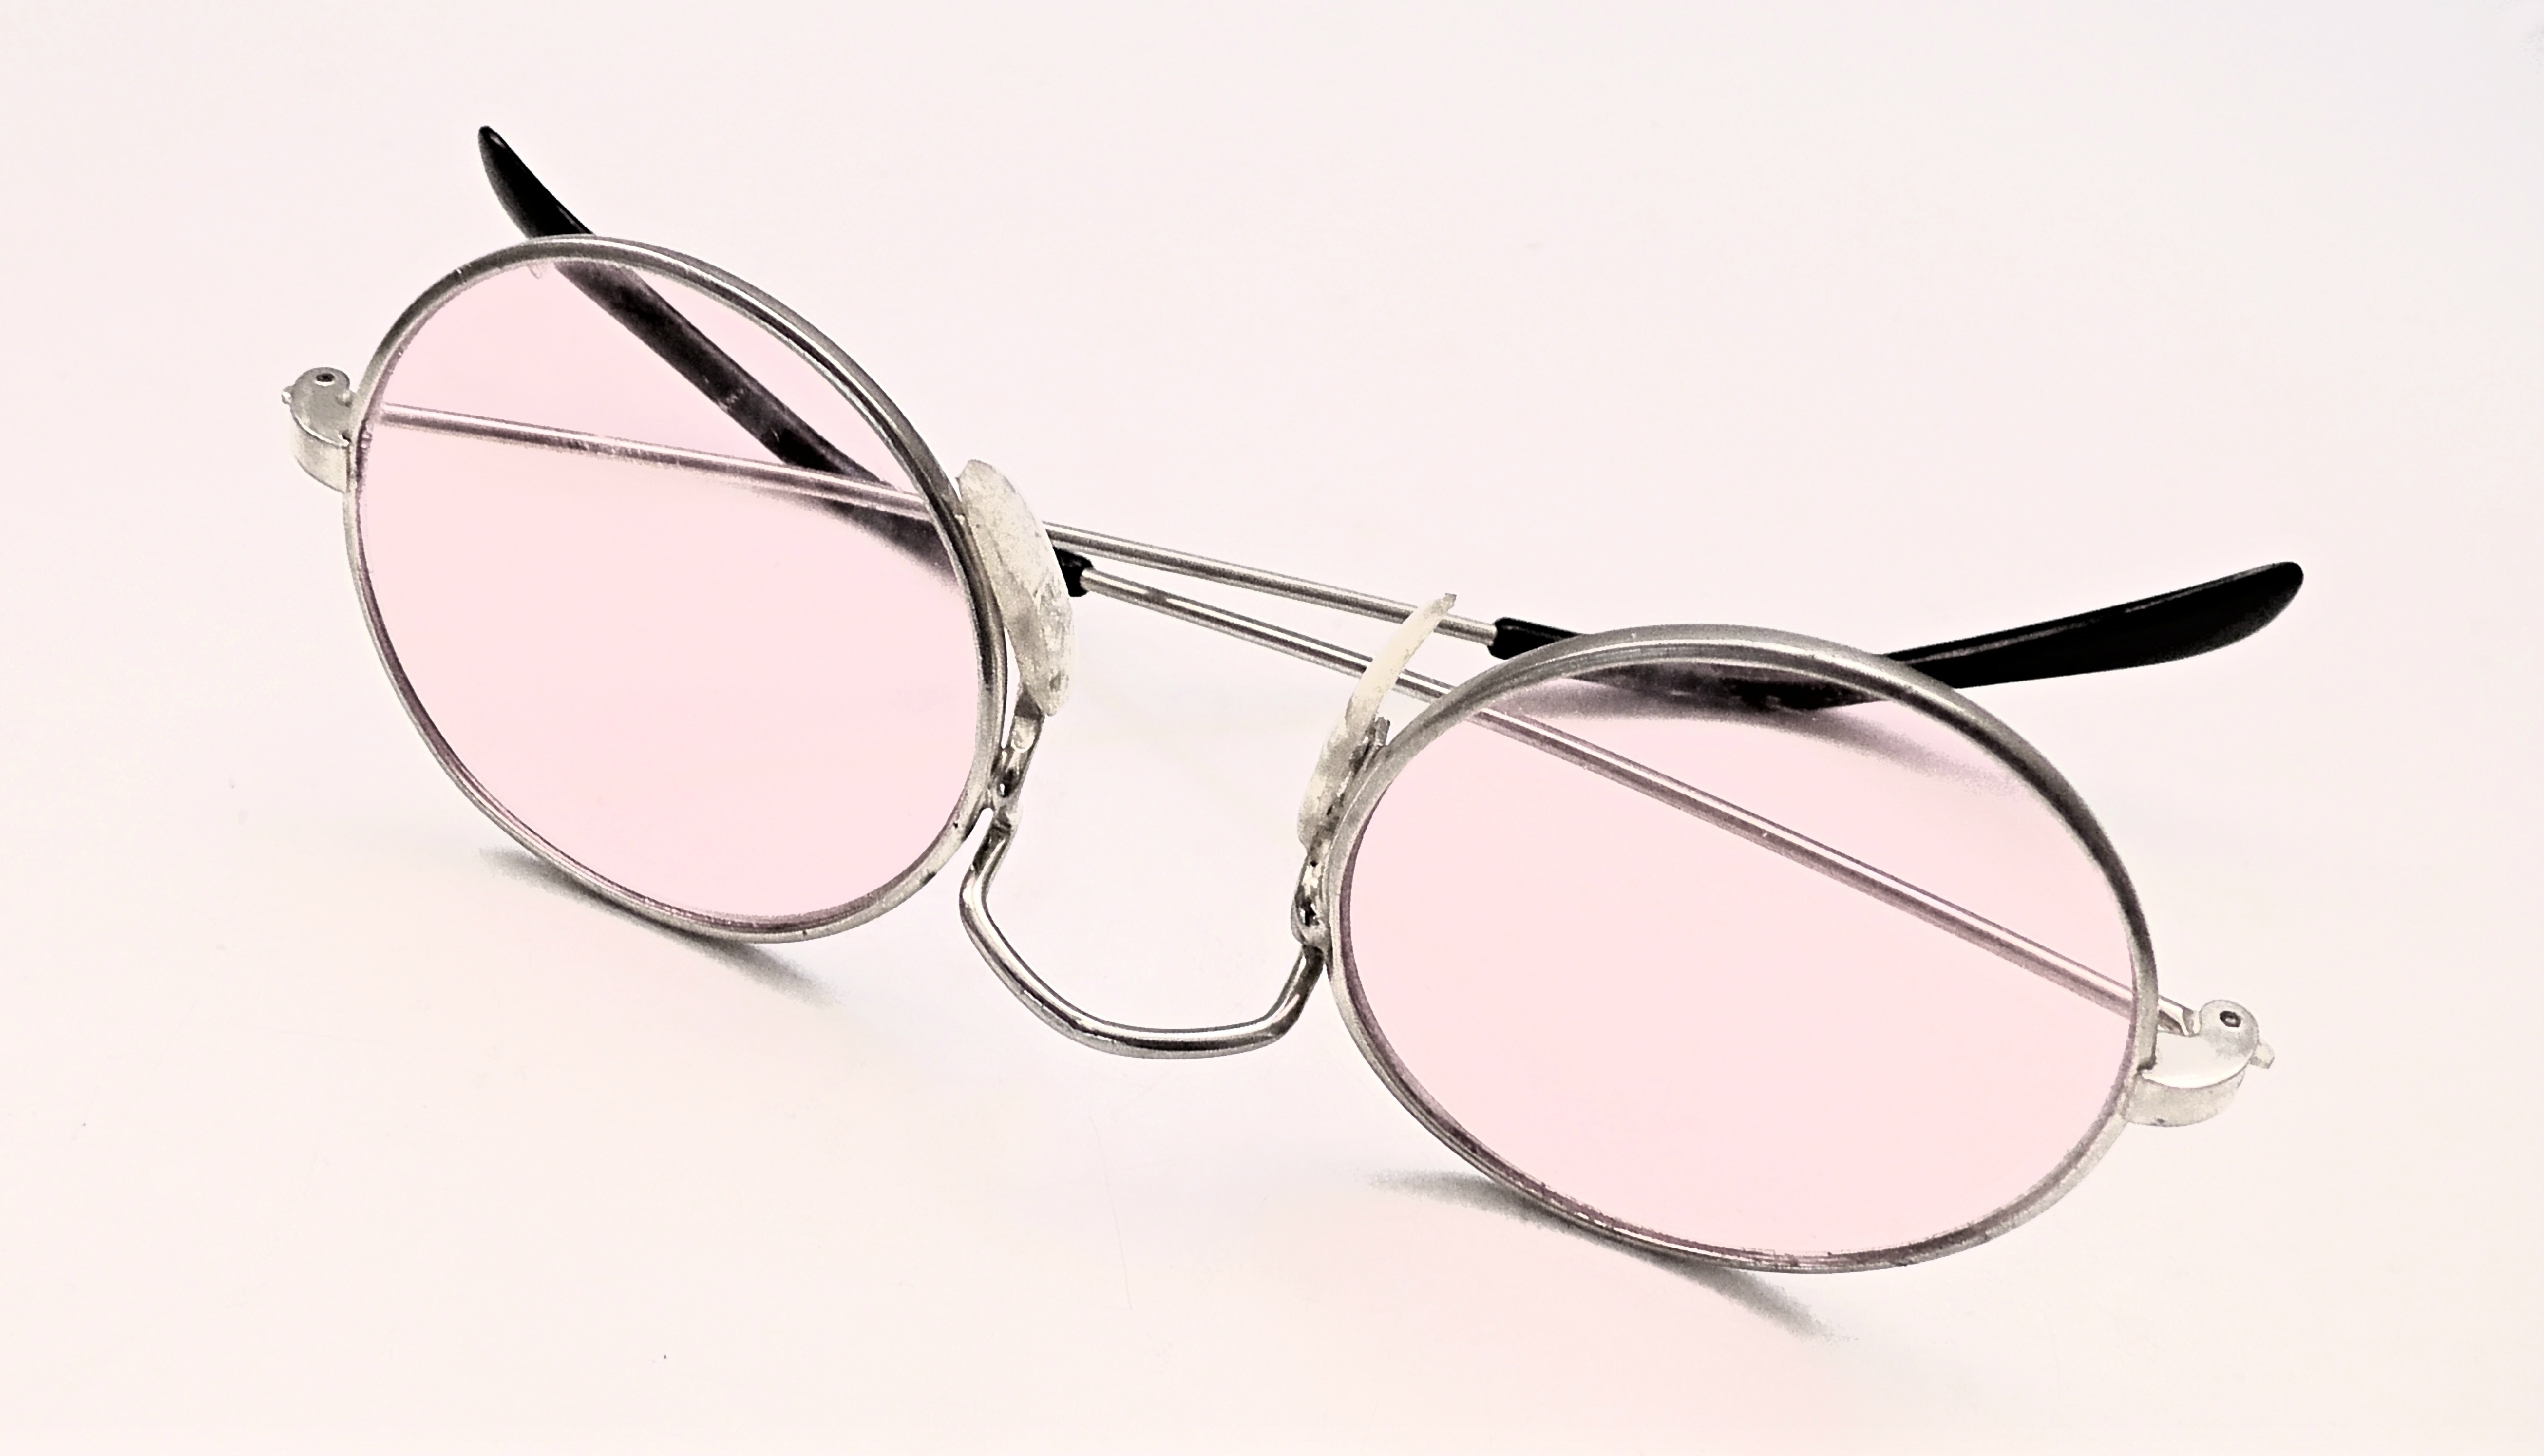 silver and black framed eyeglasses